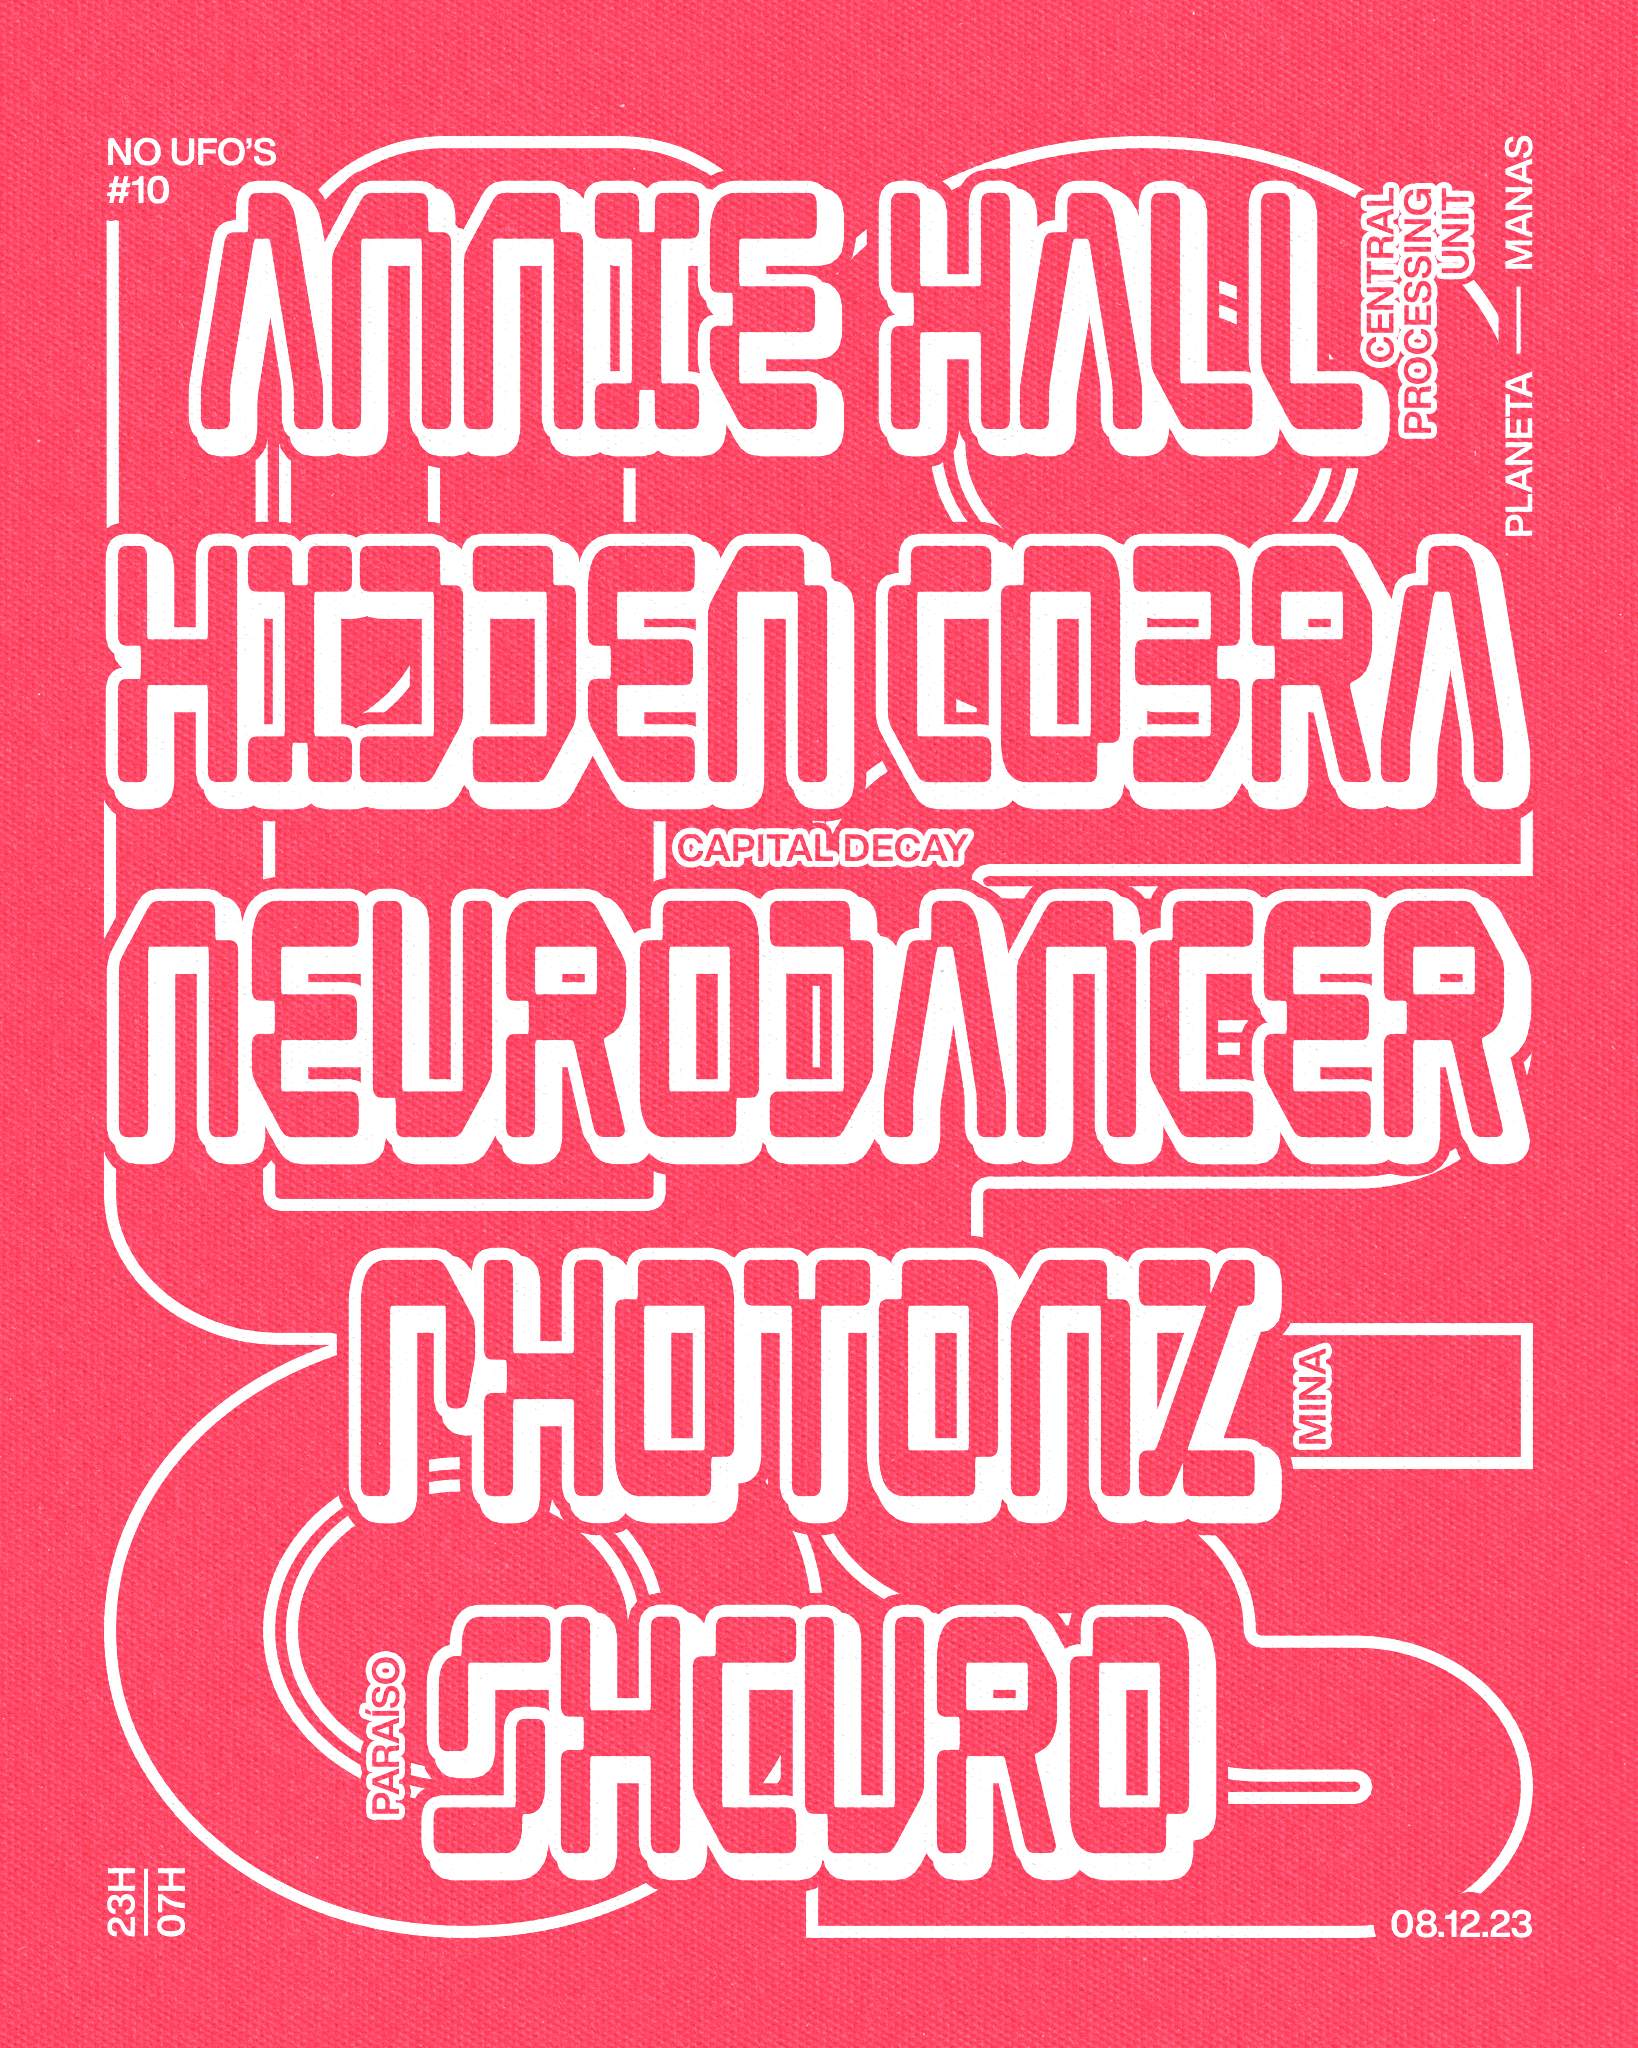 No UFOs #10 with Annie Hall, Hidden Cobra & Neurodancer, Shcuro and Photonz - Página frontal